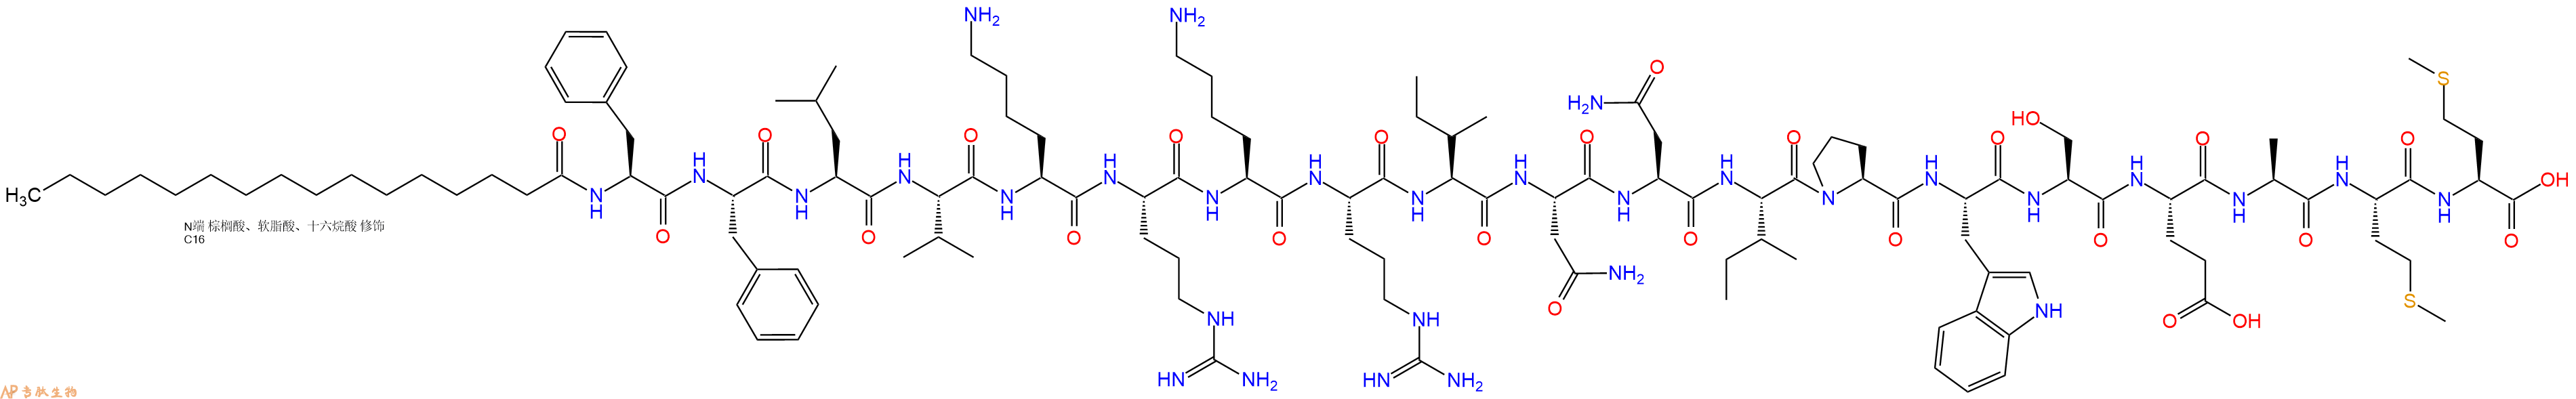 专肽生物产品Palmiticacid-Phe-Phe-Leu-Val-Lys-Arg-Lys-Arg-Ile-A